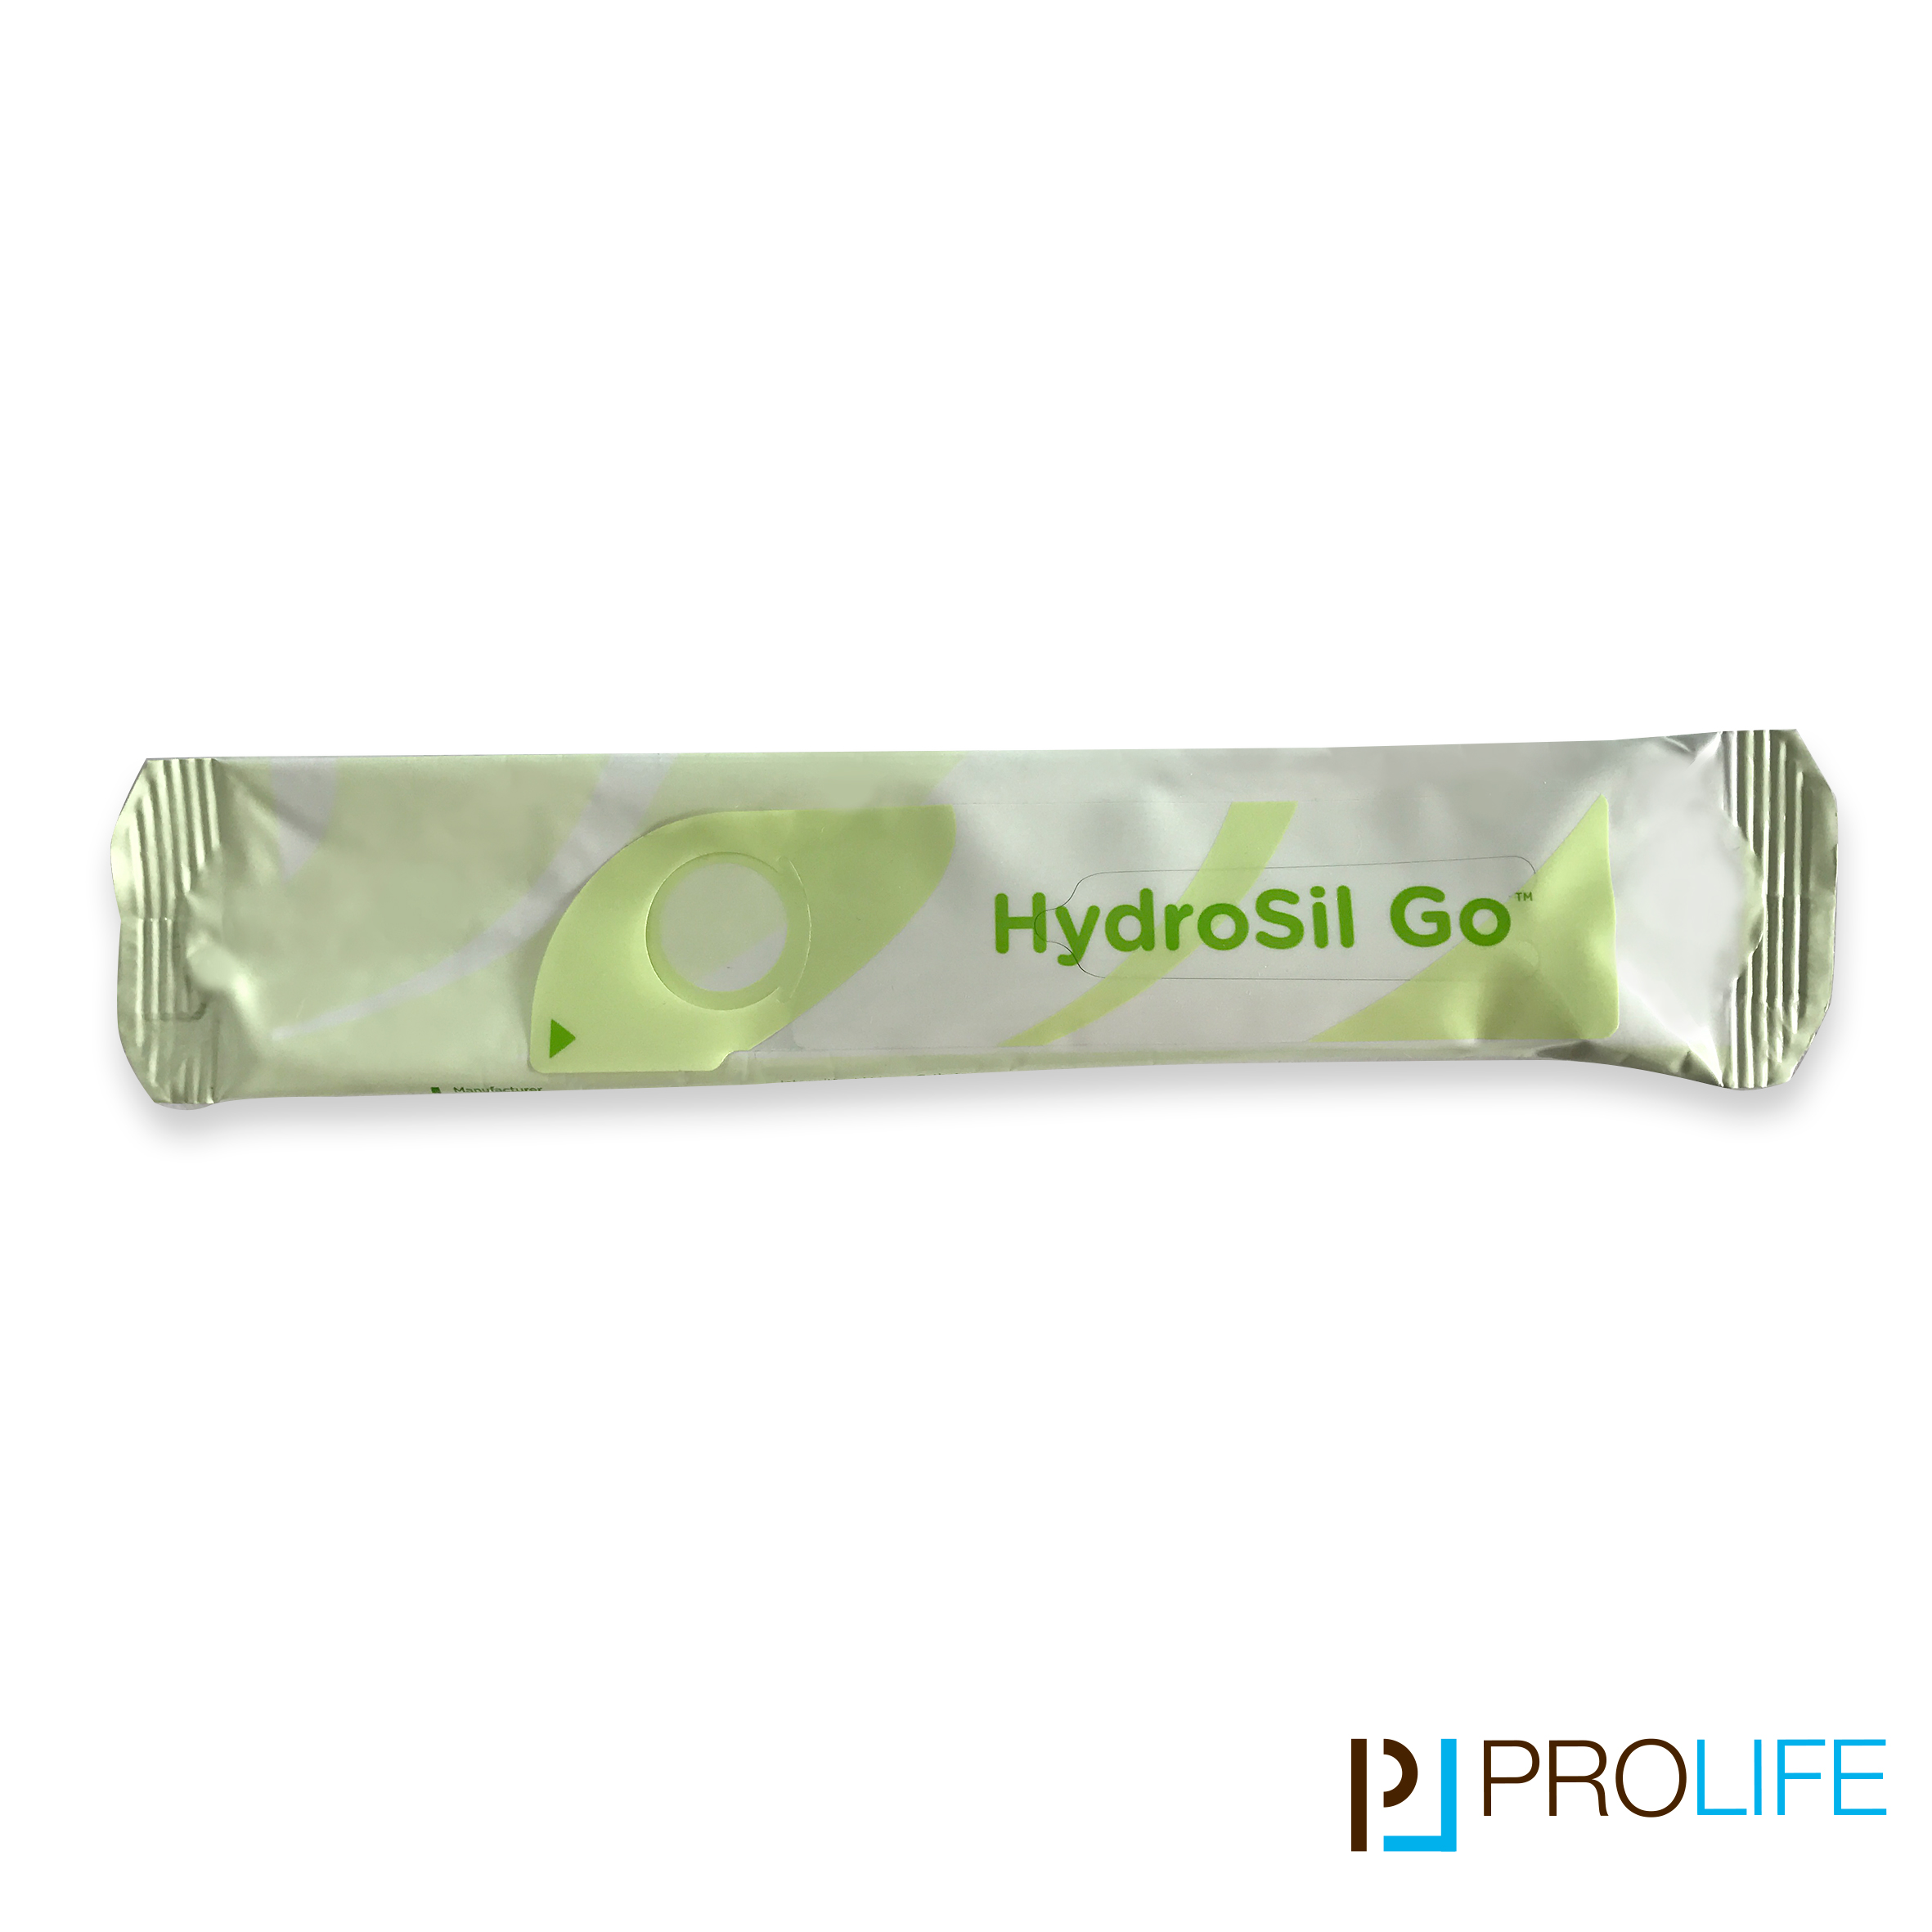 HydroSil Go